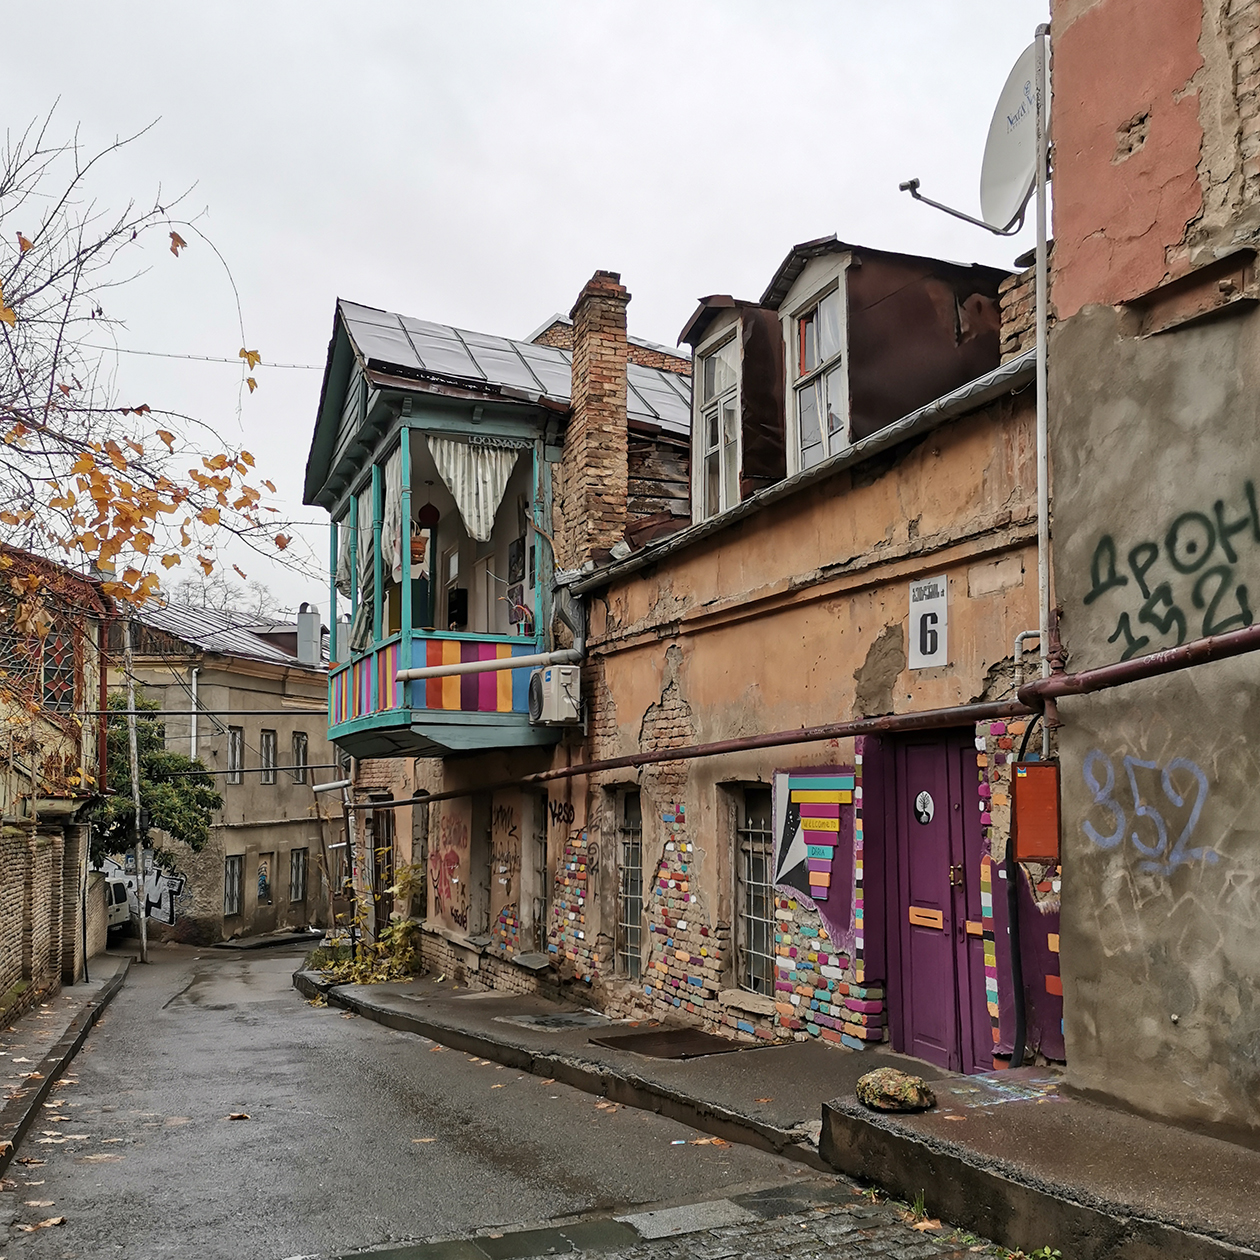 Гулять туристом по центру Тбилиси чудесно. Хочется сфотографировать каждый цветной балкончик или эркер. Правда, жилой фонд в таких домах ветхий, коммуникации старые, часто случаются аварийные отключения воды и электричества